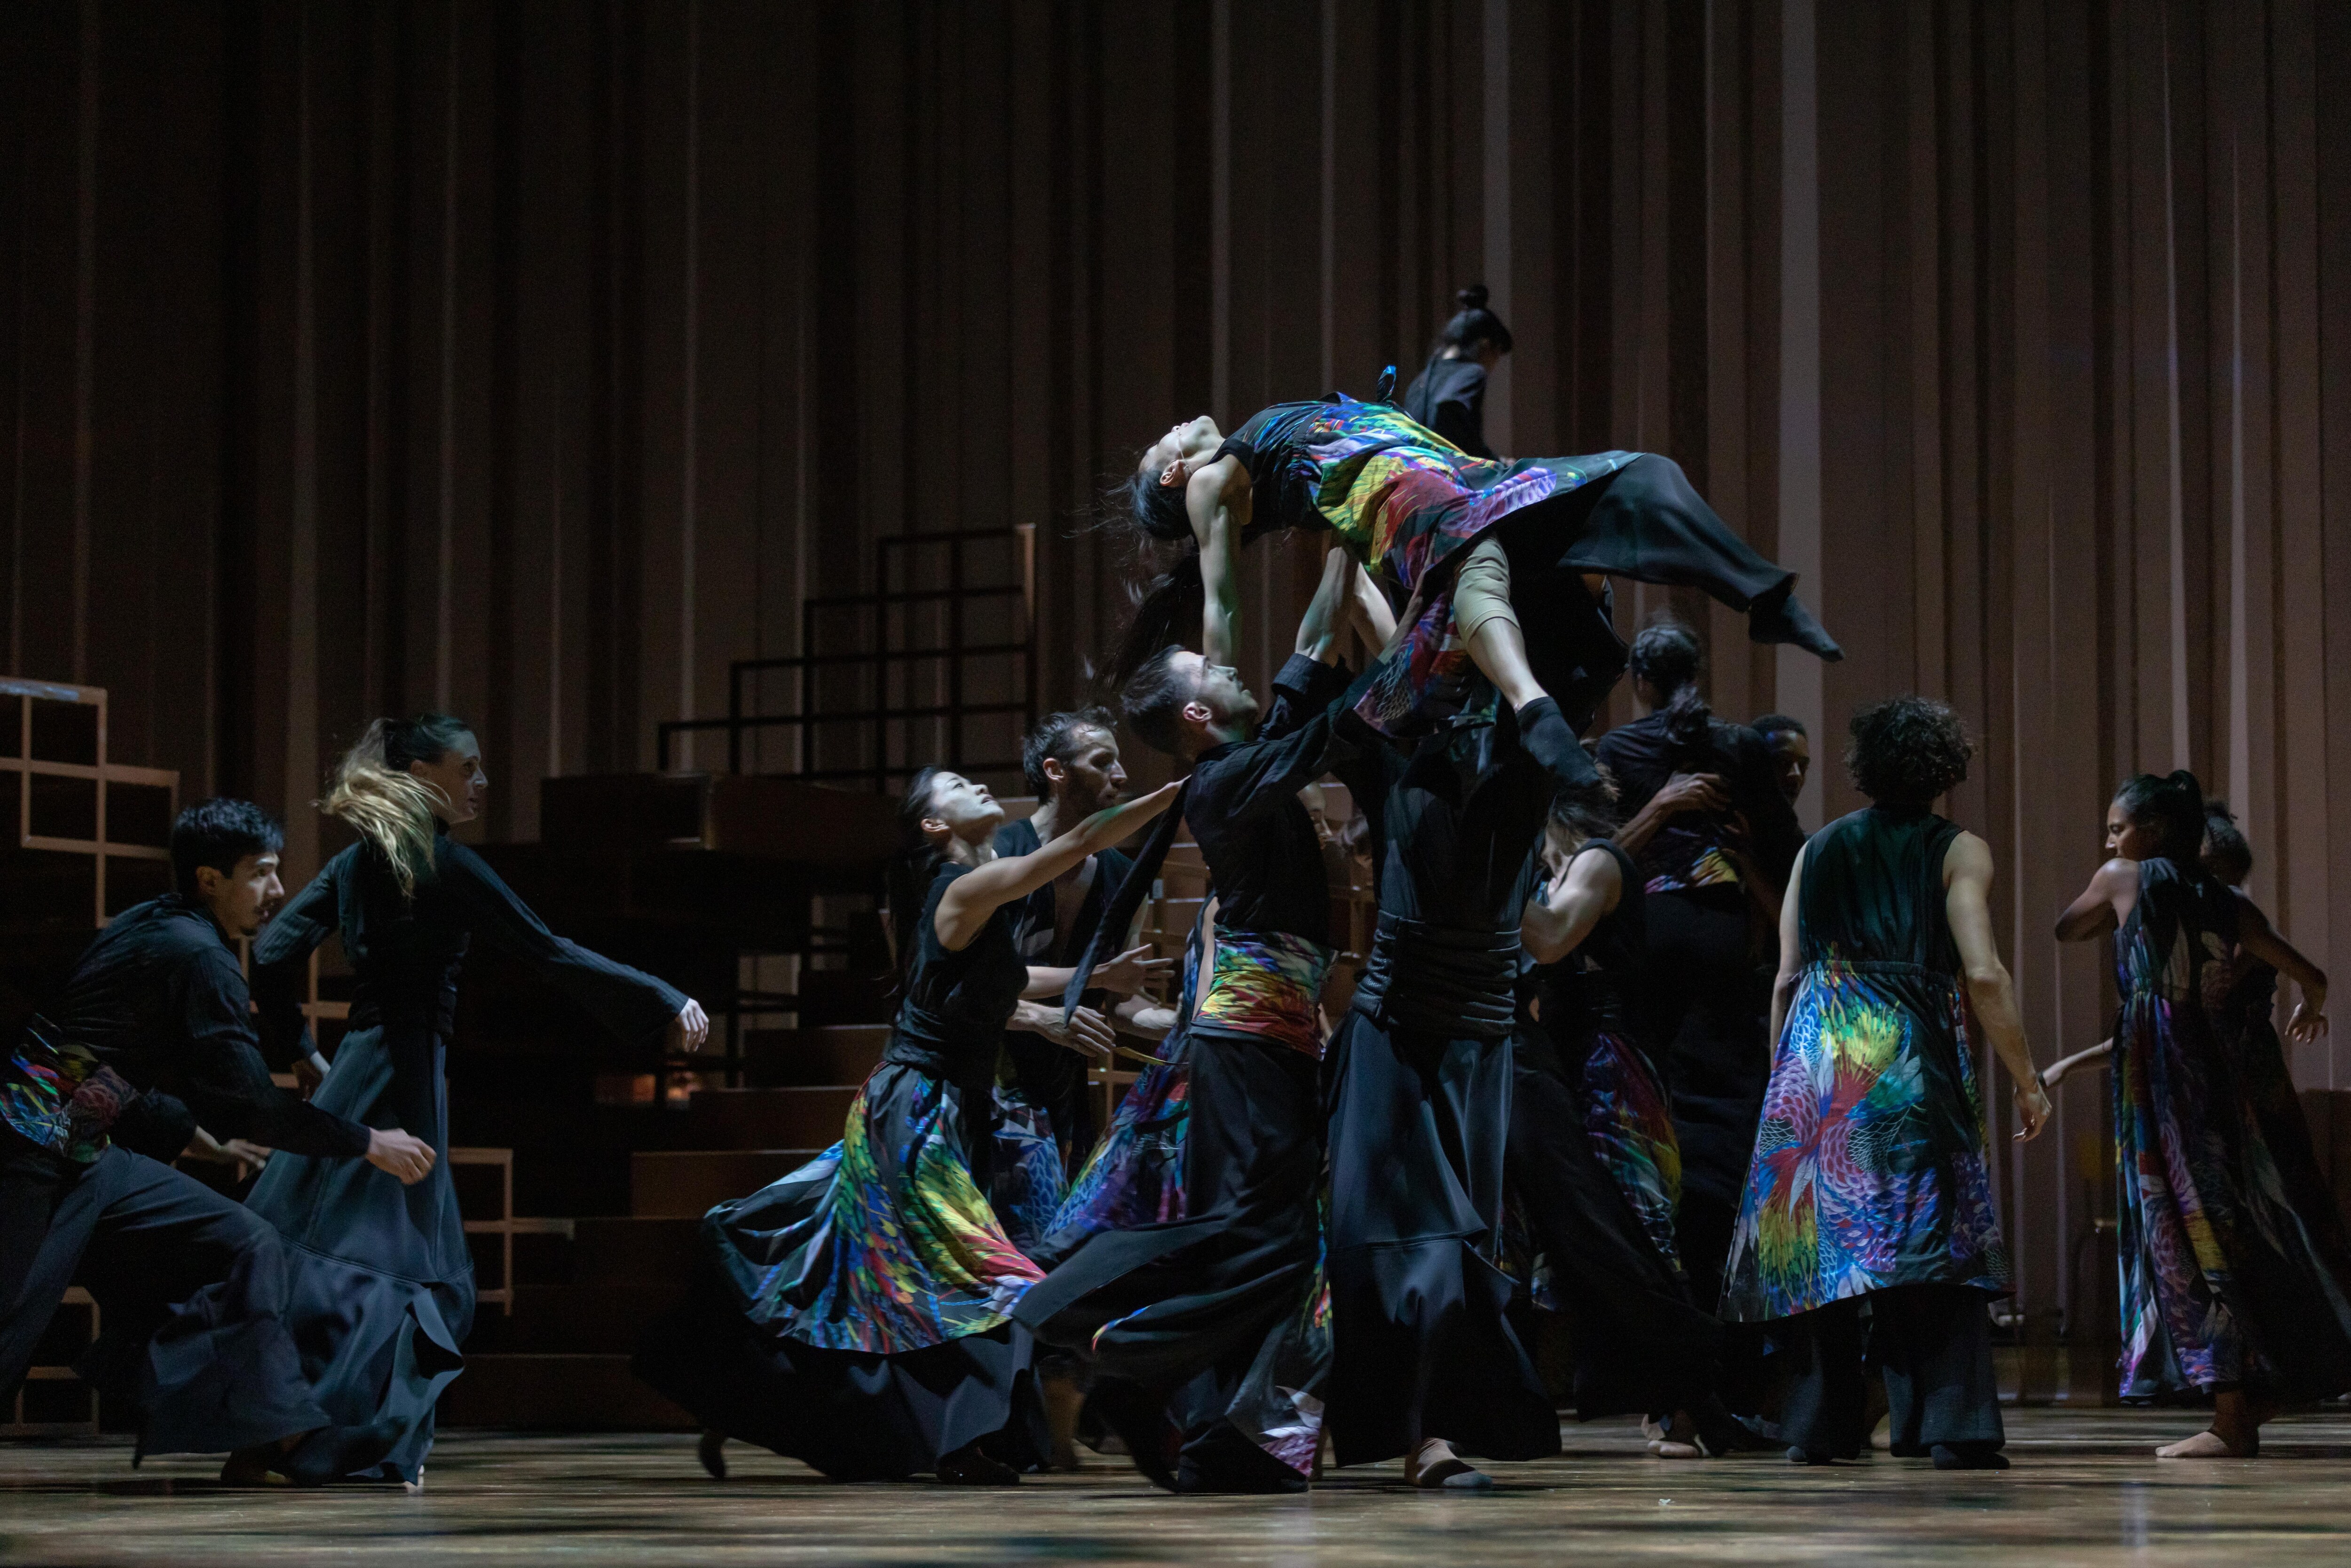  《Ukiyo-e》 舞者身穿彩色服装，向后倚靠，双手举在空中 身穿黑衣的舞者们在背景中表演舞蹈。 